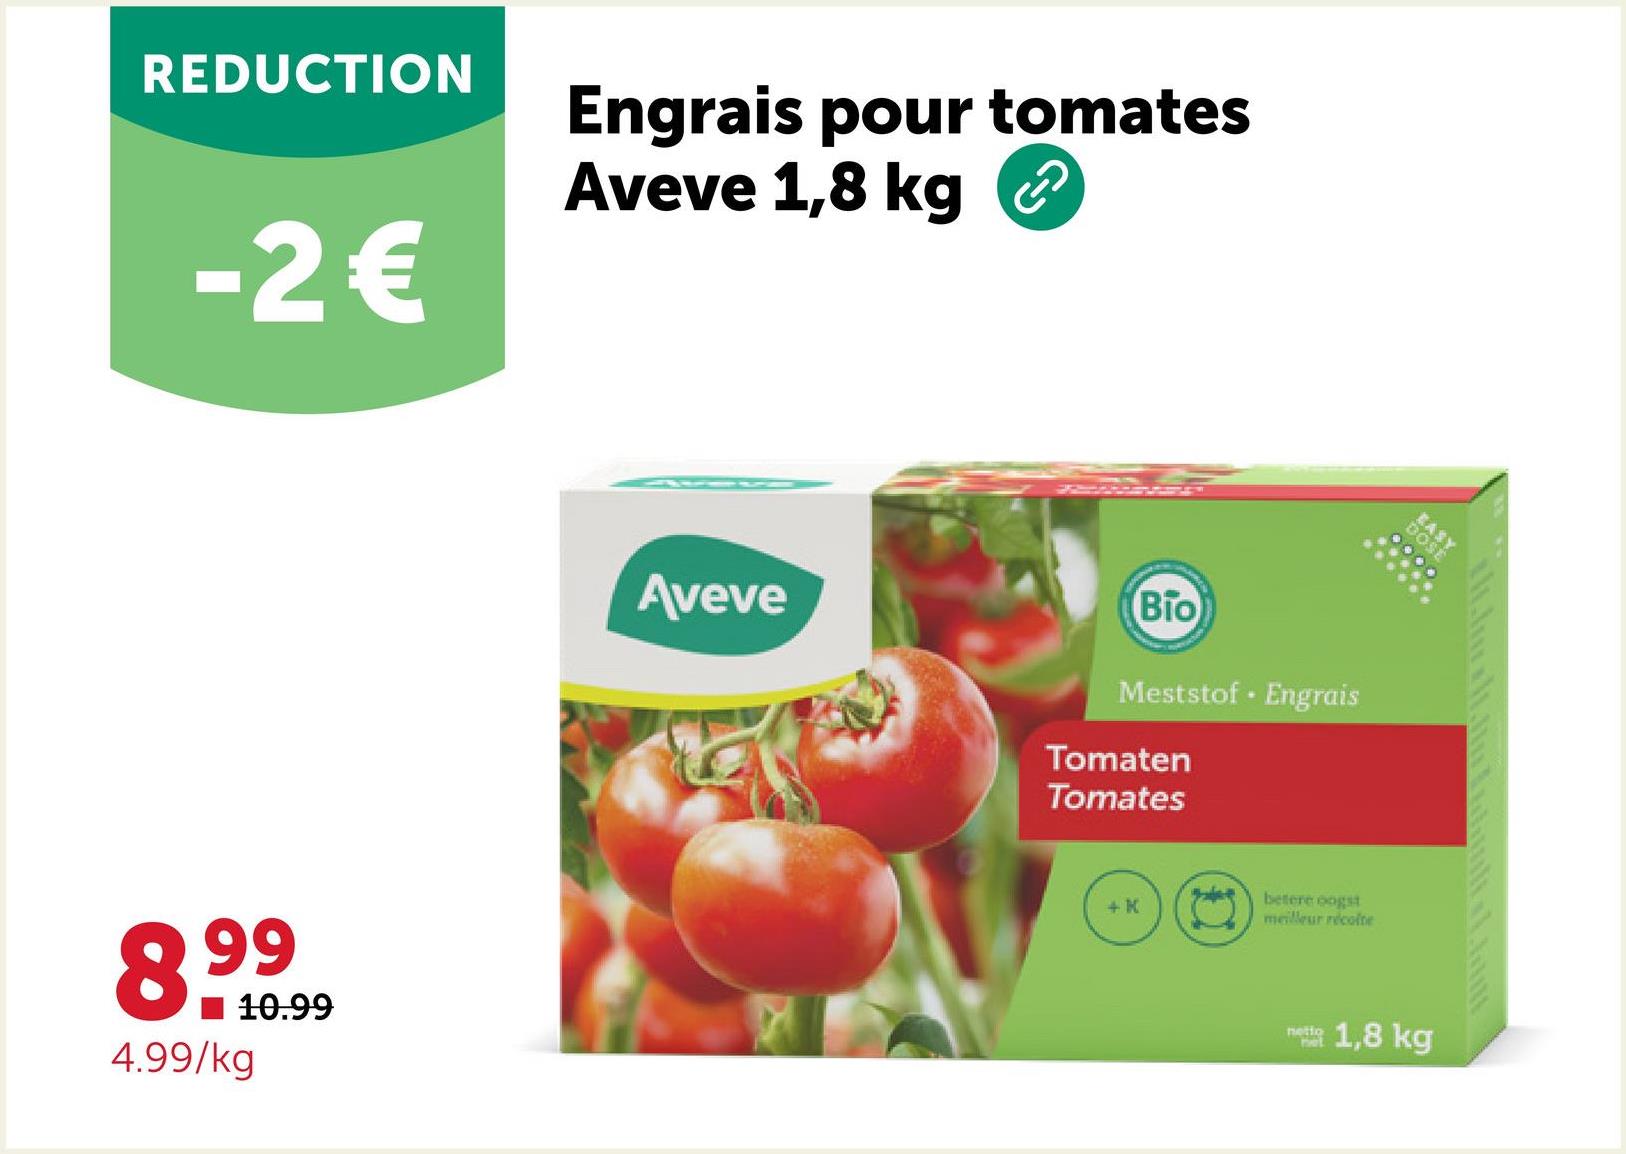 REDUCTION
-2€
Engrais pour tomates
Aveve 1,8 kg
8.99
4.99/kg
10.99
Aveve
Bio
Meststof Engrais
Tomaten
Tomates
+ K
betere oogst
meilleur récolte
netio
Pet
EASY
DOSE
1,8 kg